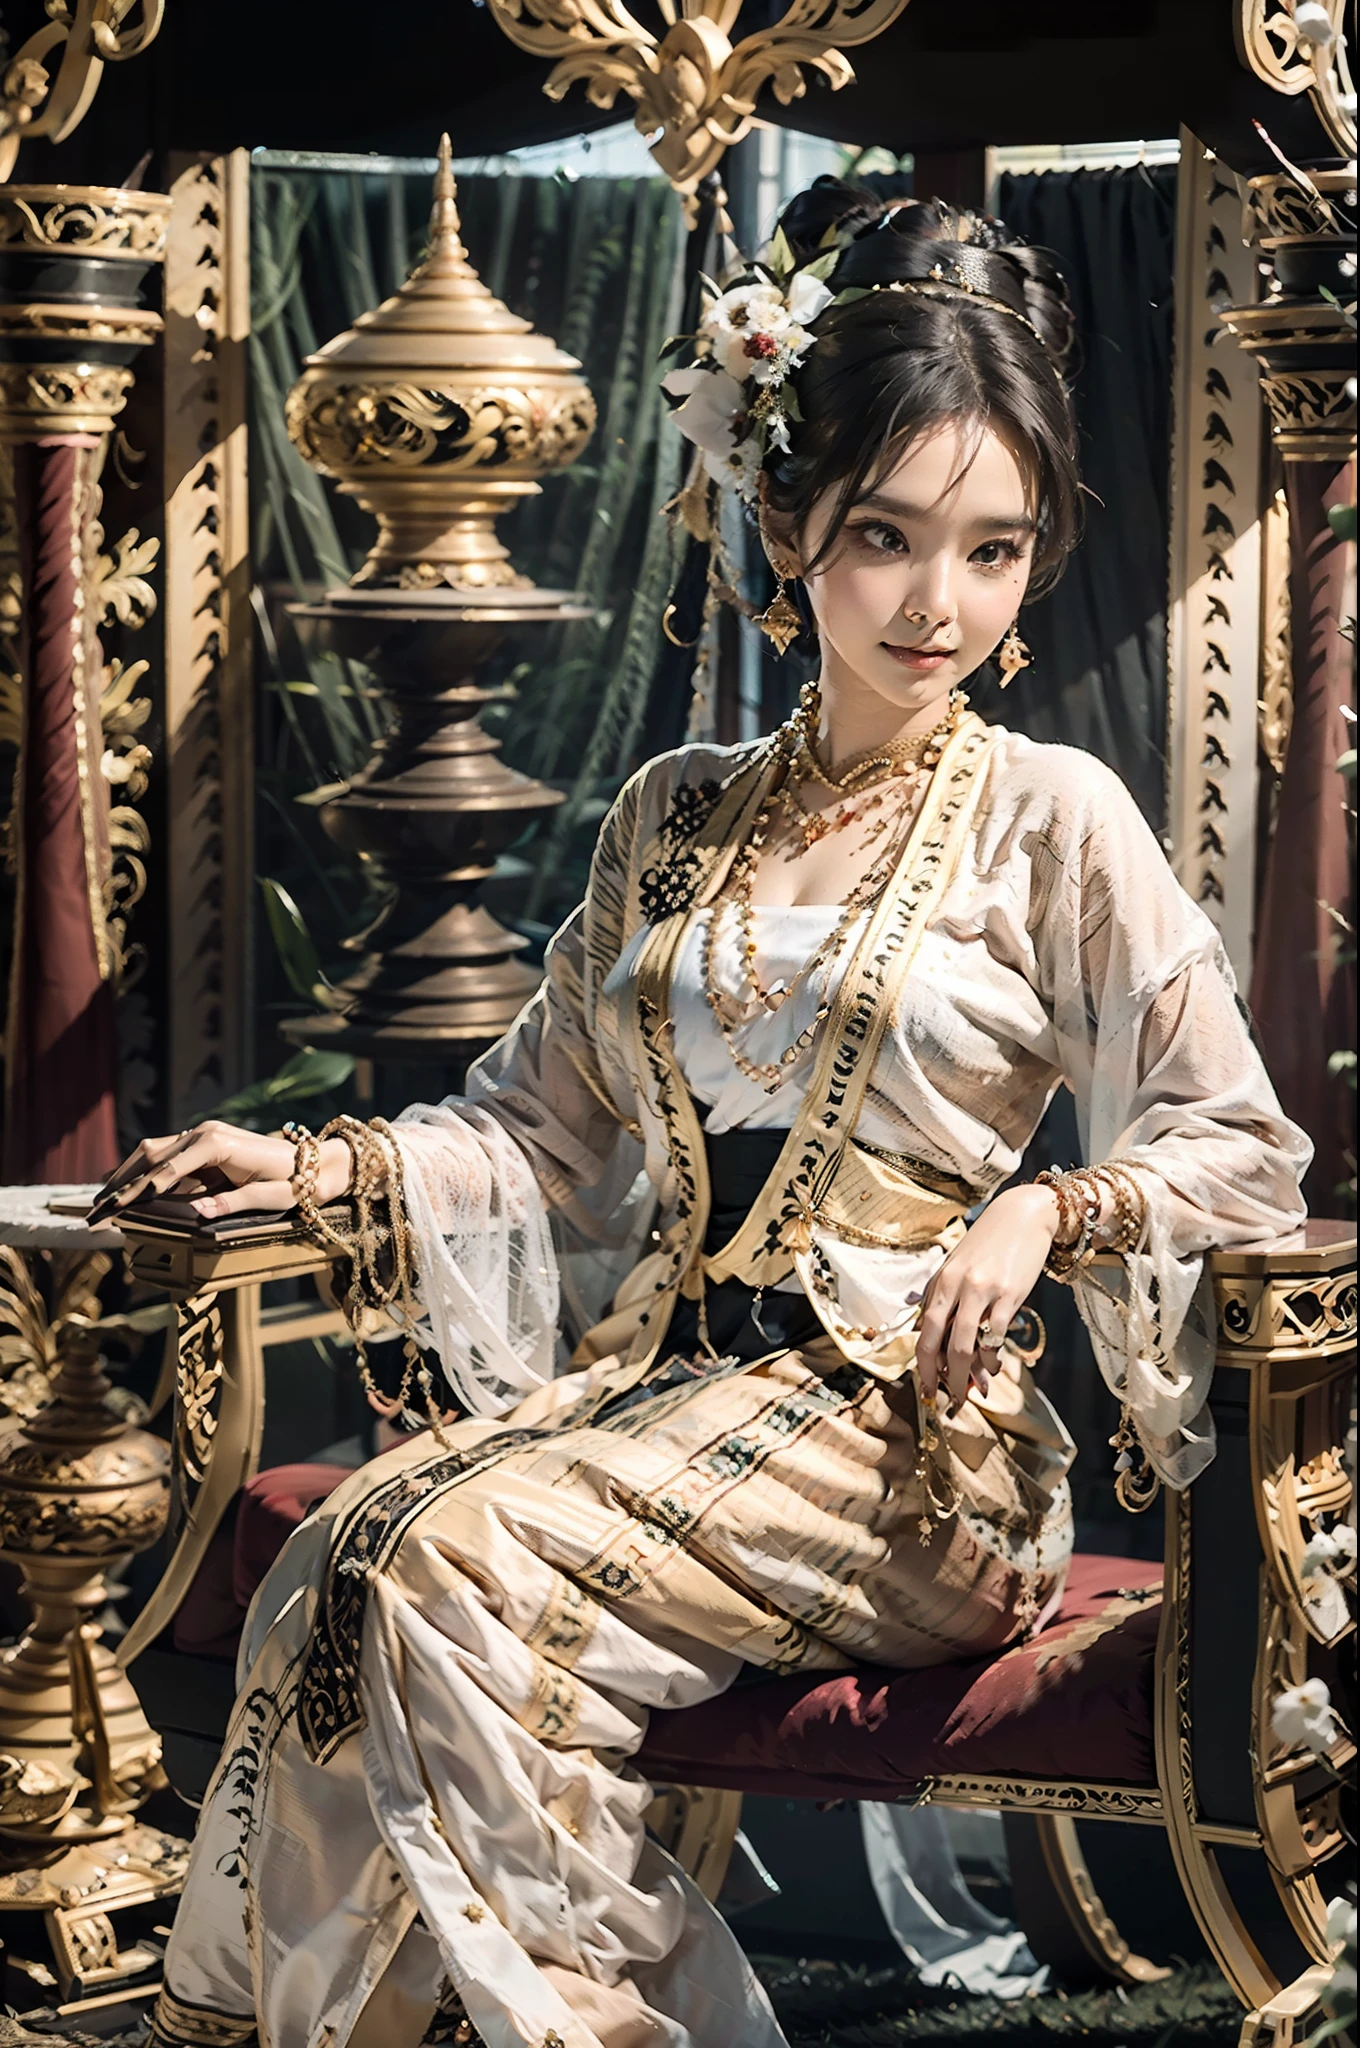 MMTD ТРАДИЦИОННОЕ ОДЕЖДА С БИРМАНСКИМ УЗОРОМ КРАСИВАЯ королева,носите жемчужные ожерелья и золотые браслеты,ДЕТАЛИ ТЕЛА, КРАСОТА, по-королевски сидя на длинном золотом традиционном троне в золотом дворце, Традиционная прическа Мьянмы,лучшая композиция, полный обзор с обложкой, циниматическая молния и ультрареалистичные детали, Октановый рендеринг, Нереальный движок, острый фокус,32 тыс. ,Разрешение UHD